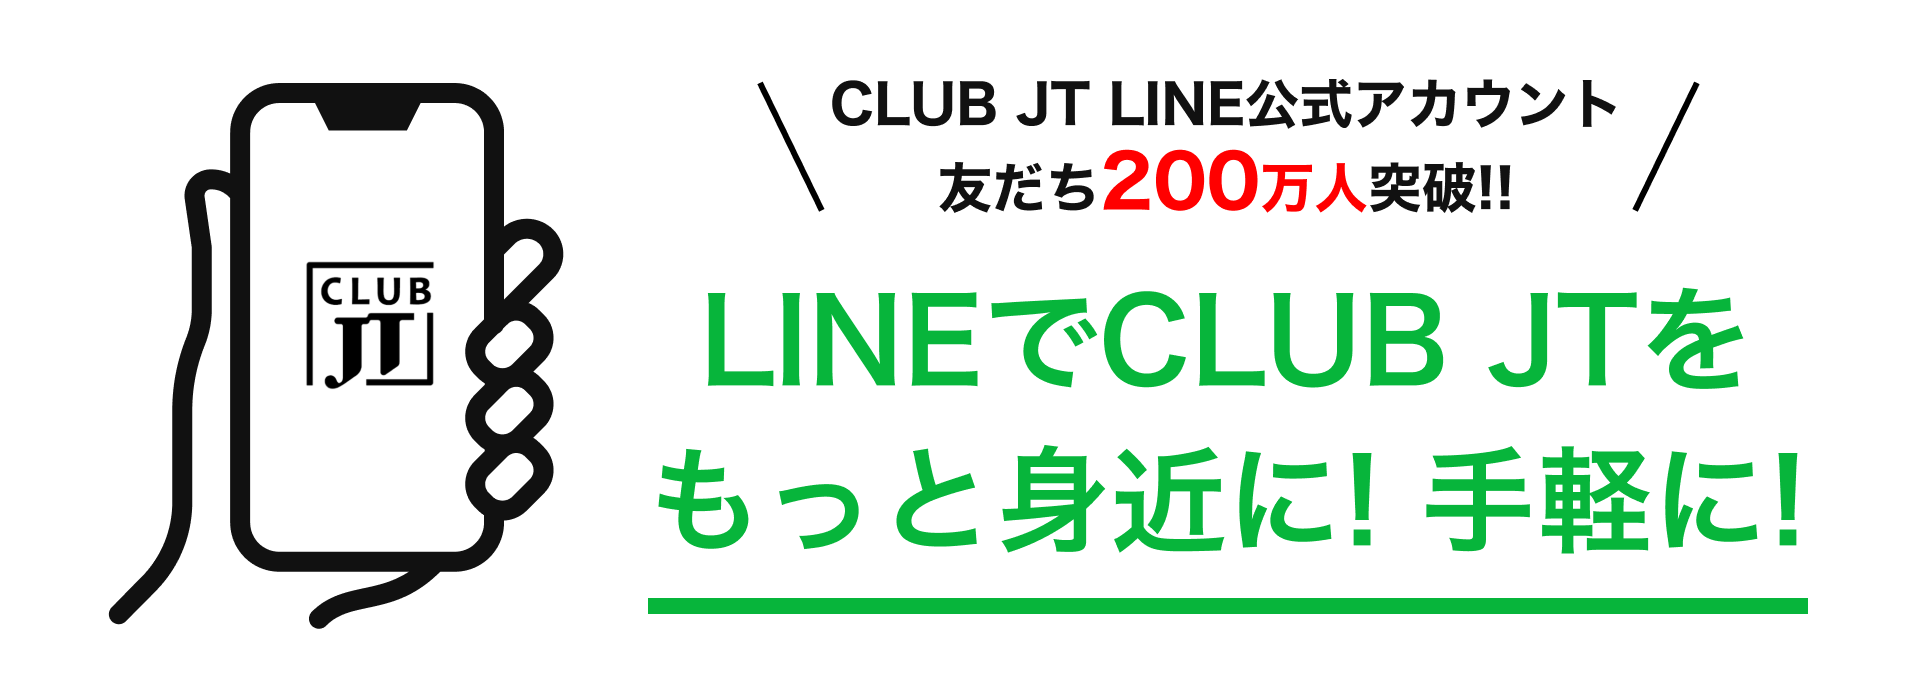 LINEでCLUB JTをもっと身近に! 手軽に!